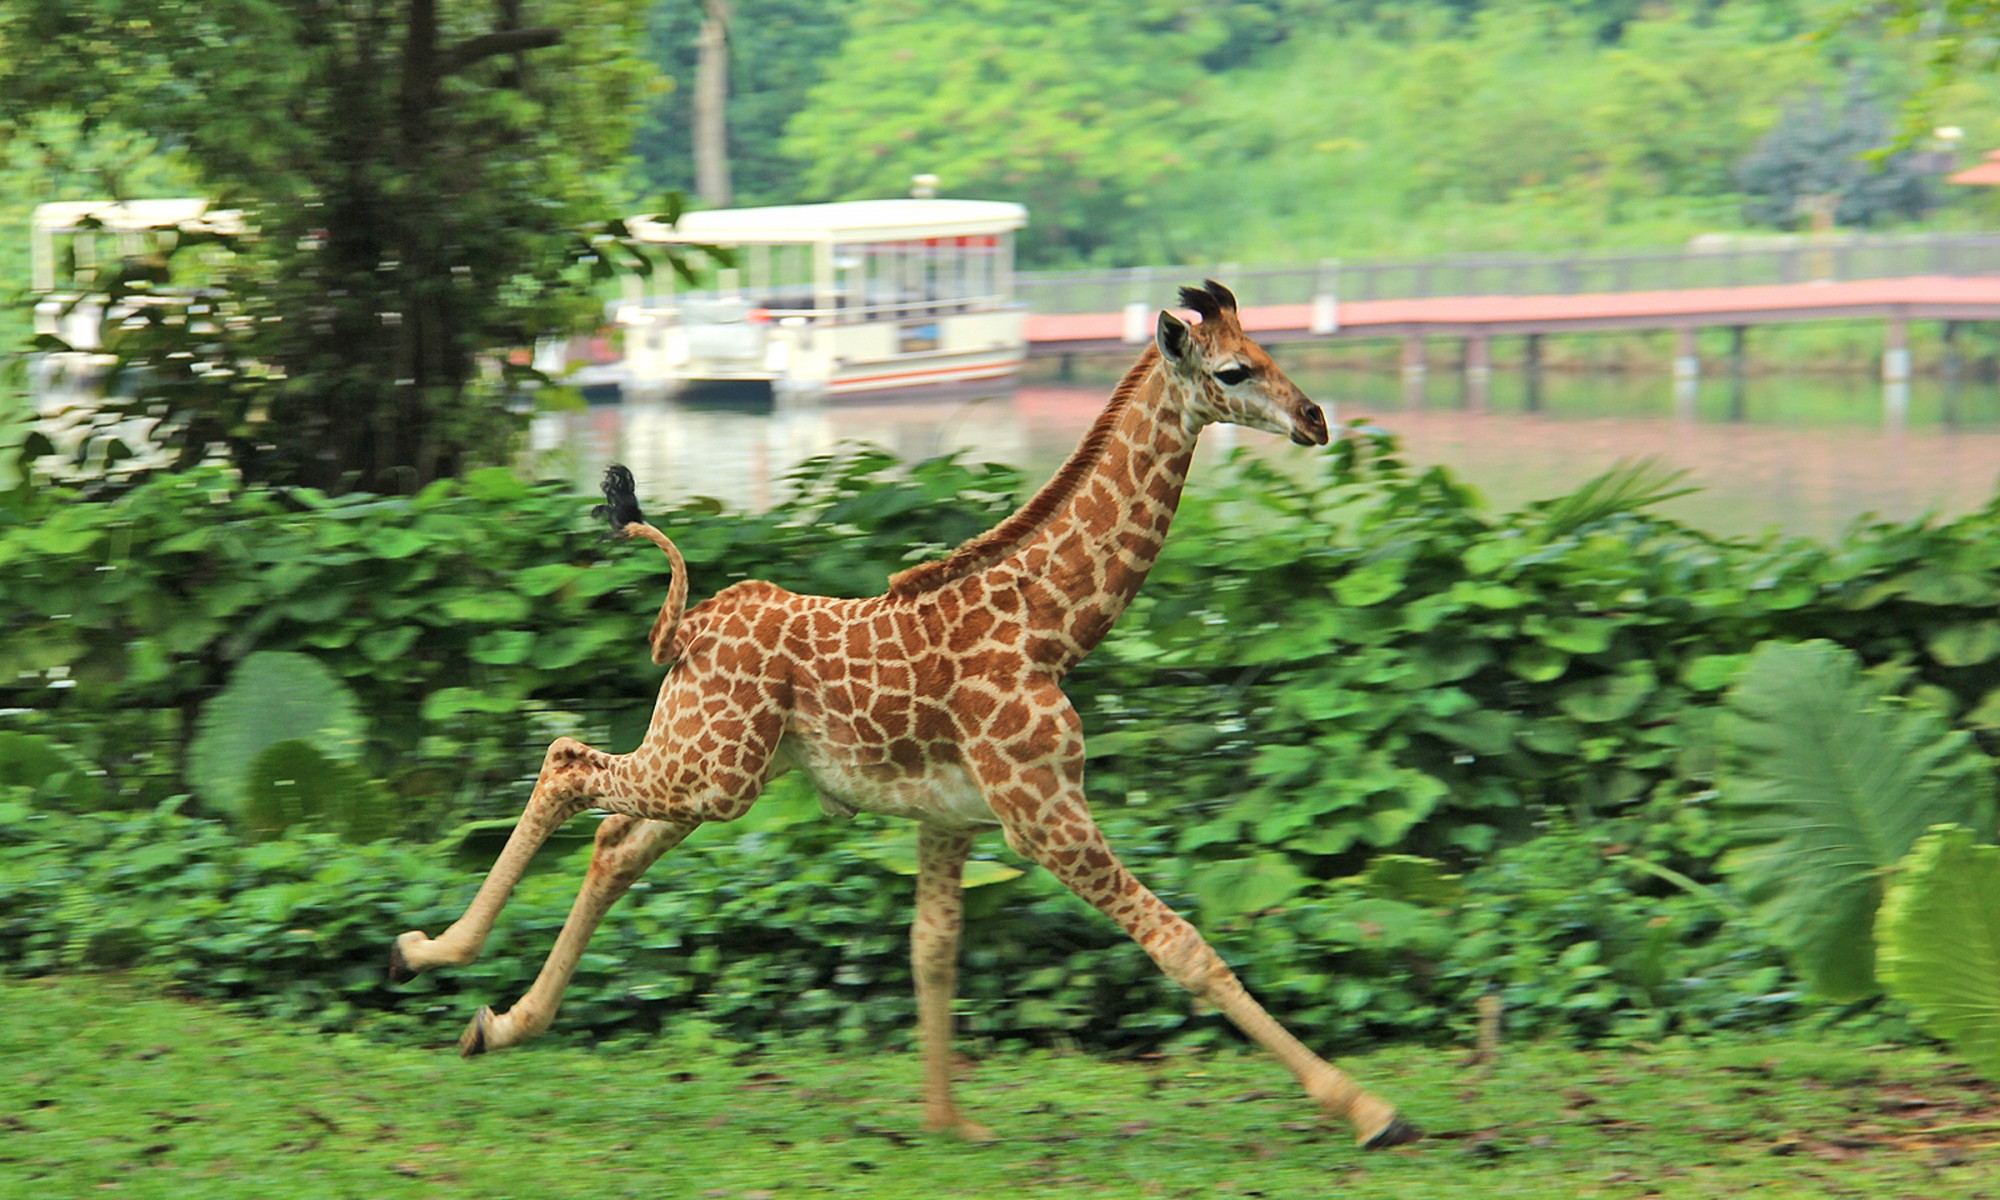 Photo courtesy of Wildlife Reserves Singapore